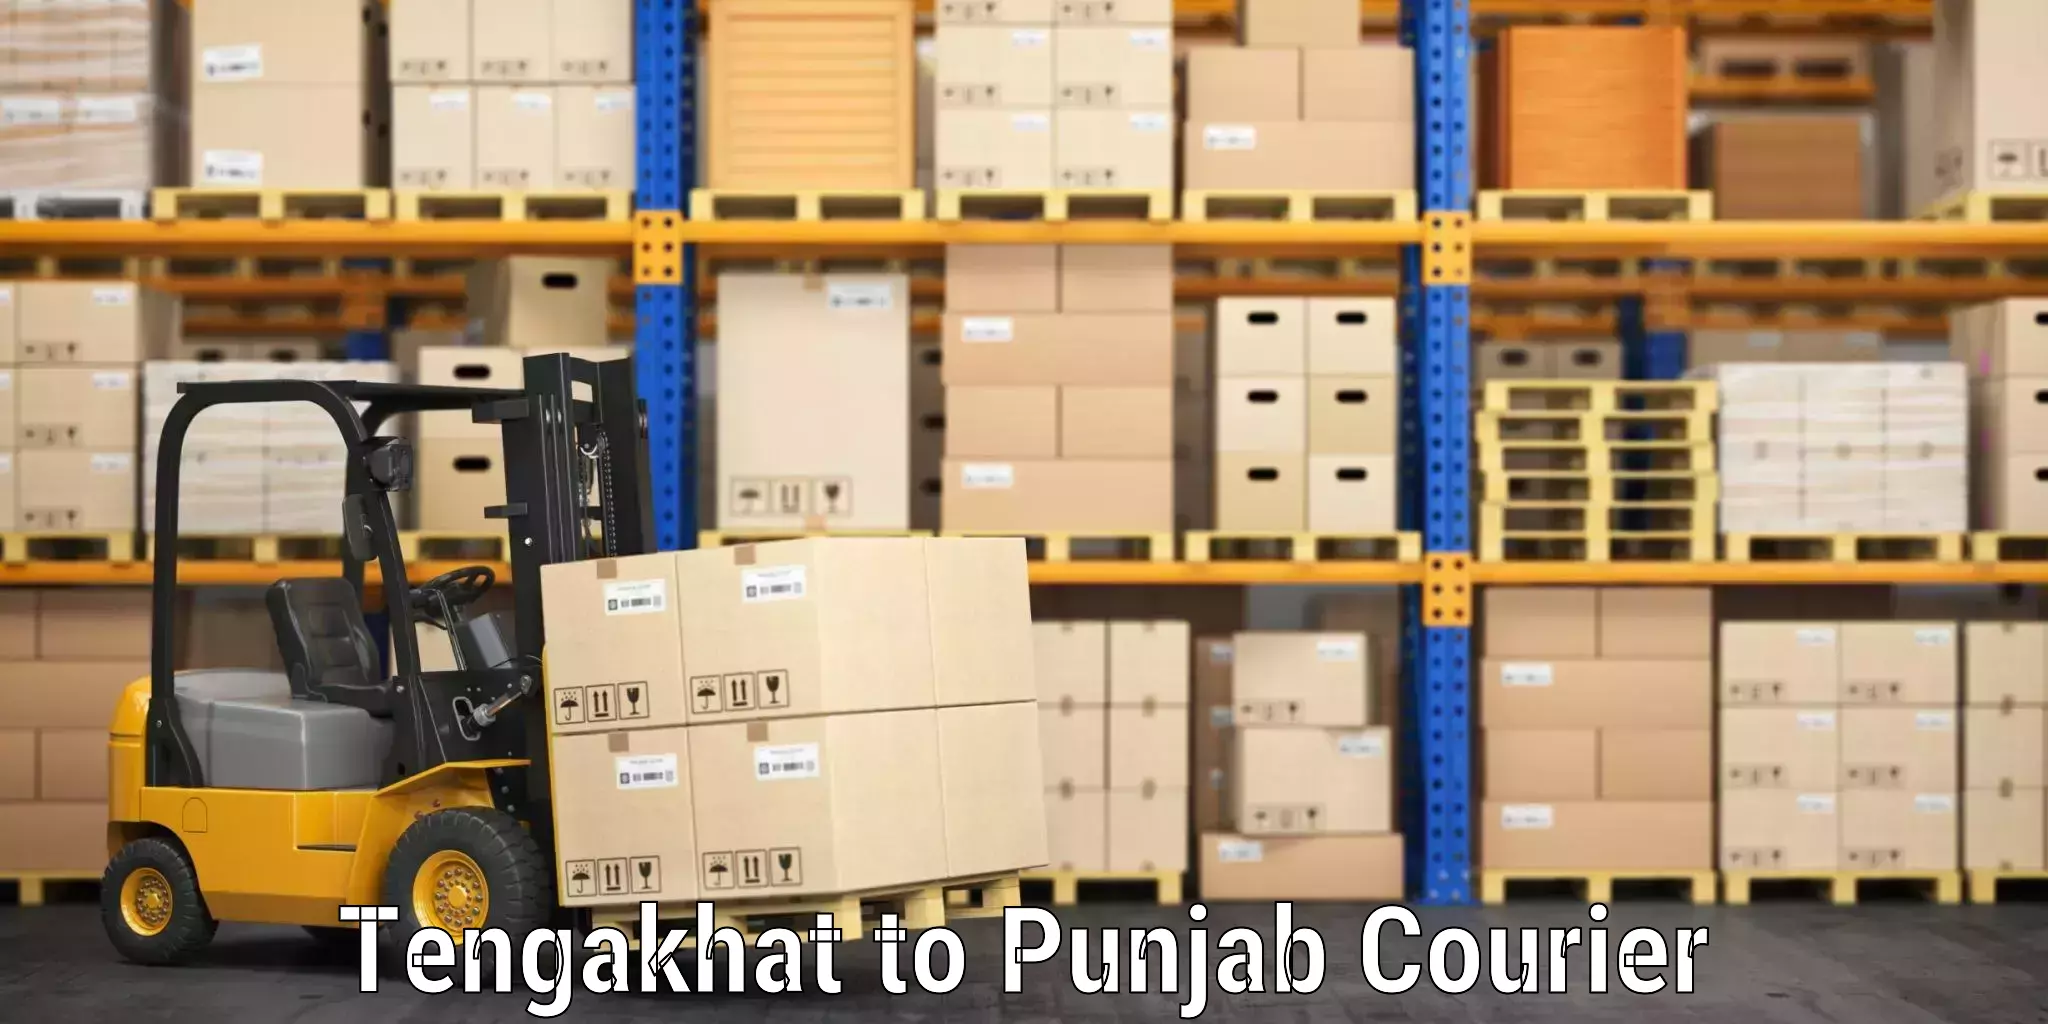 Bulk luggage shipping Tengakhat to Central University of Punjab Bathinda